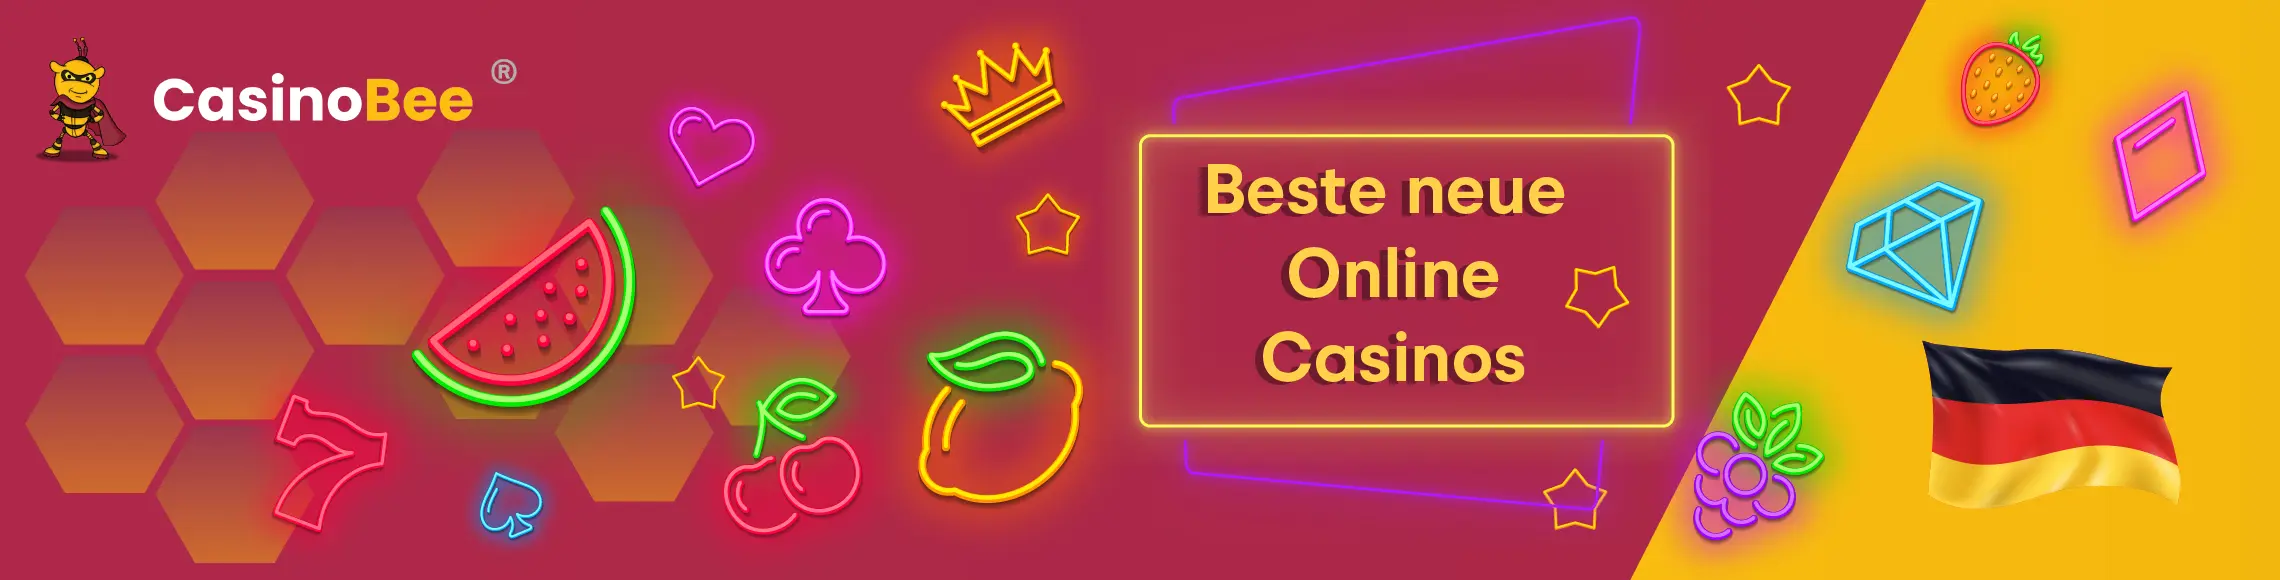 beste neue online casinos